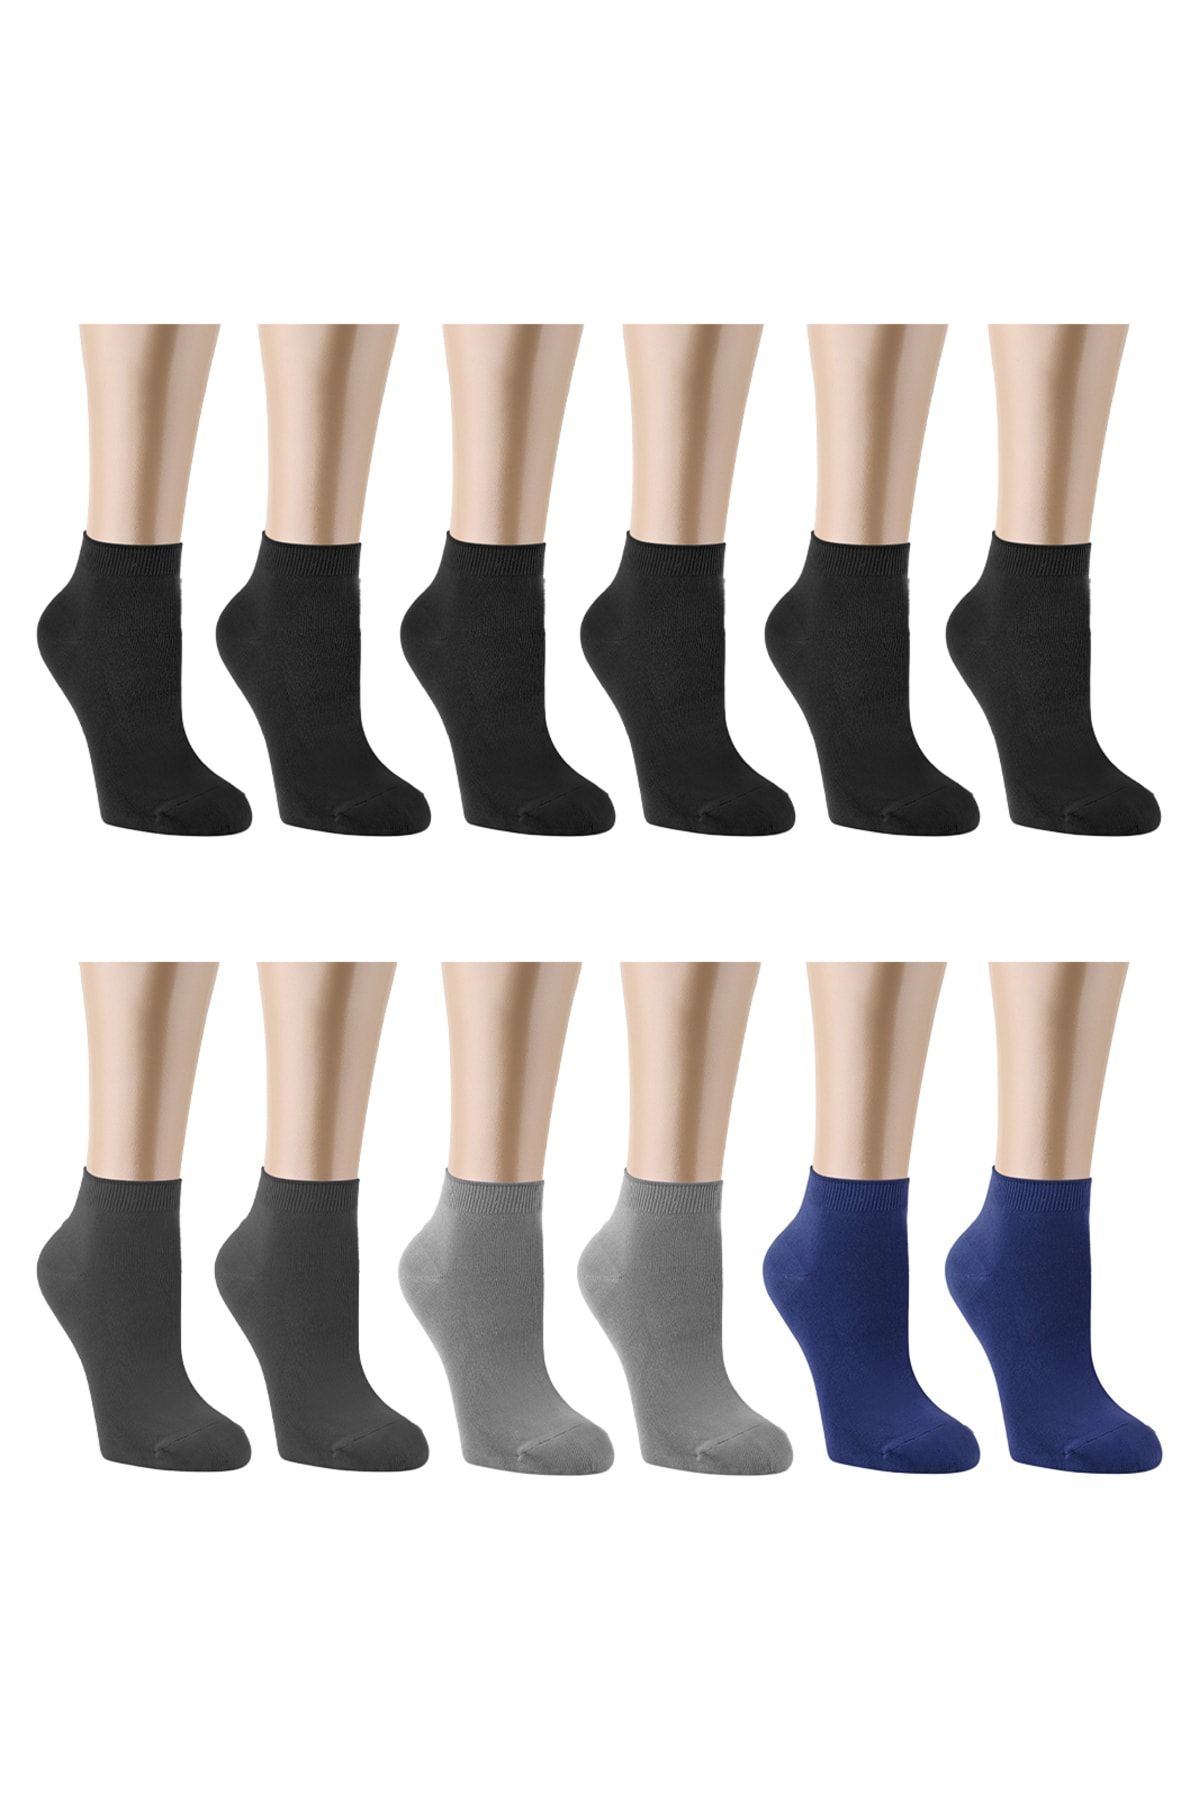 Ozzy Socks 12 Çift Bambu Erkek Dikişsiz Patik Çorap 4 Mevsim Dayanıklı Topuk Ve Burun Koyu renkler